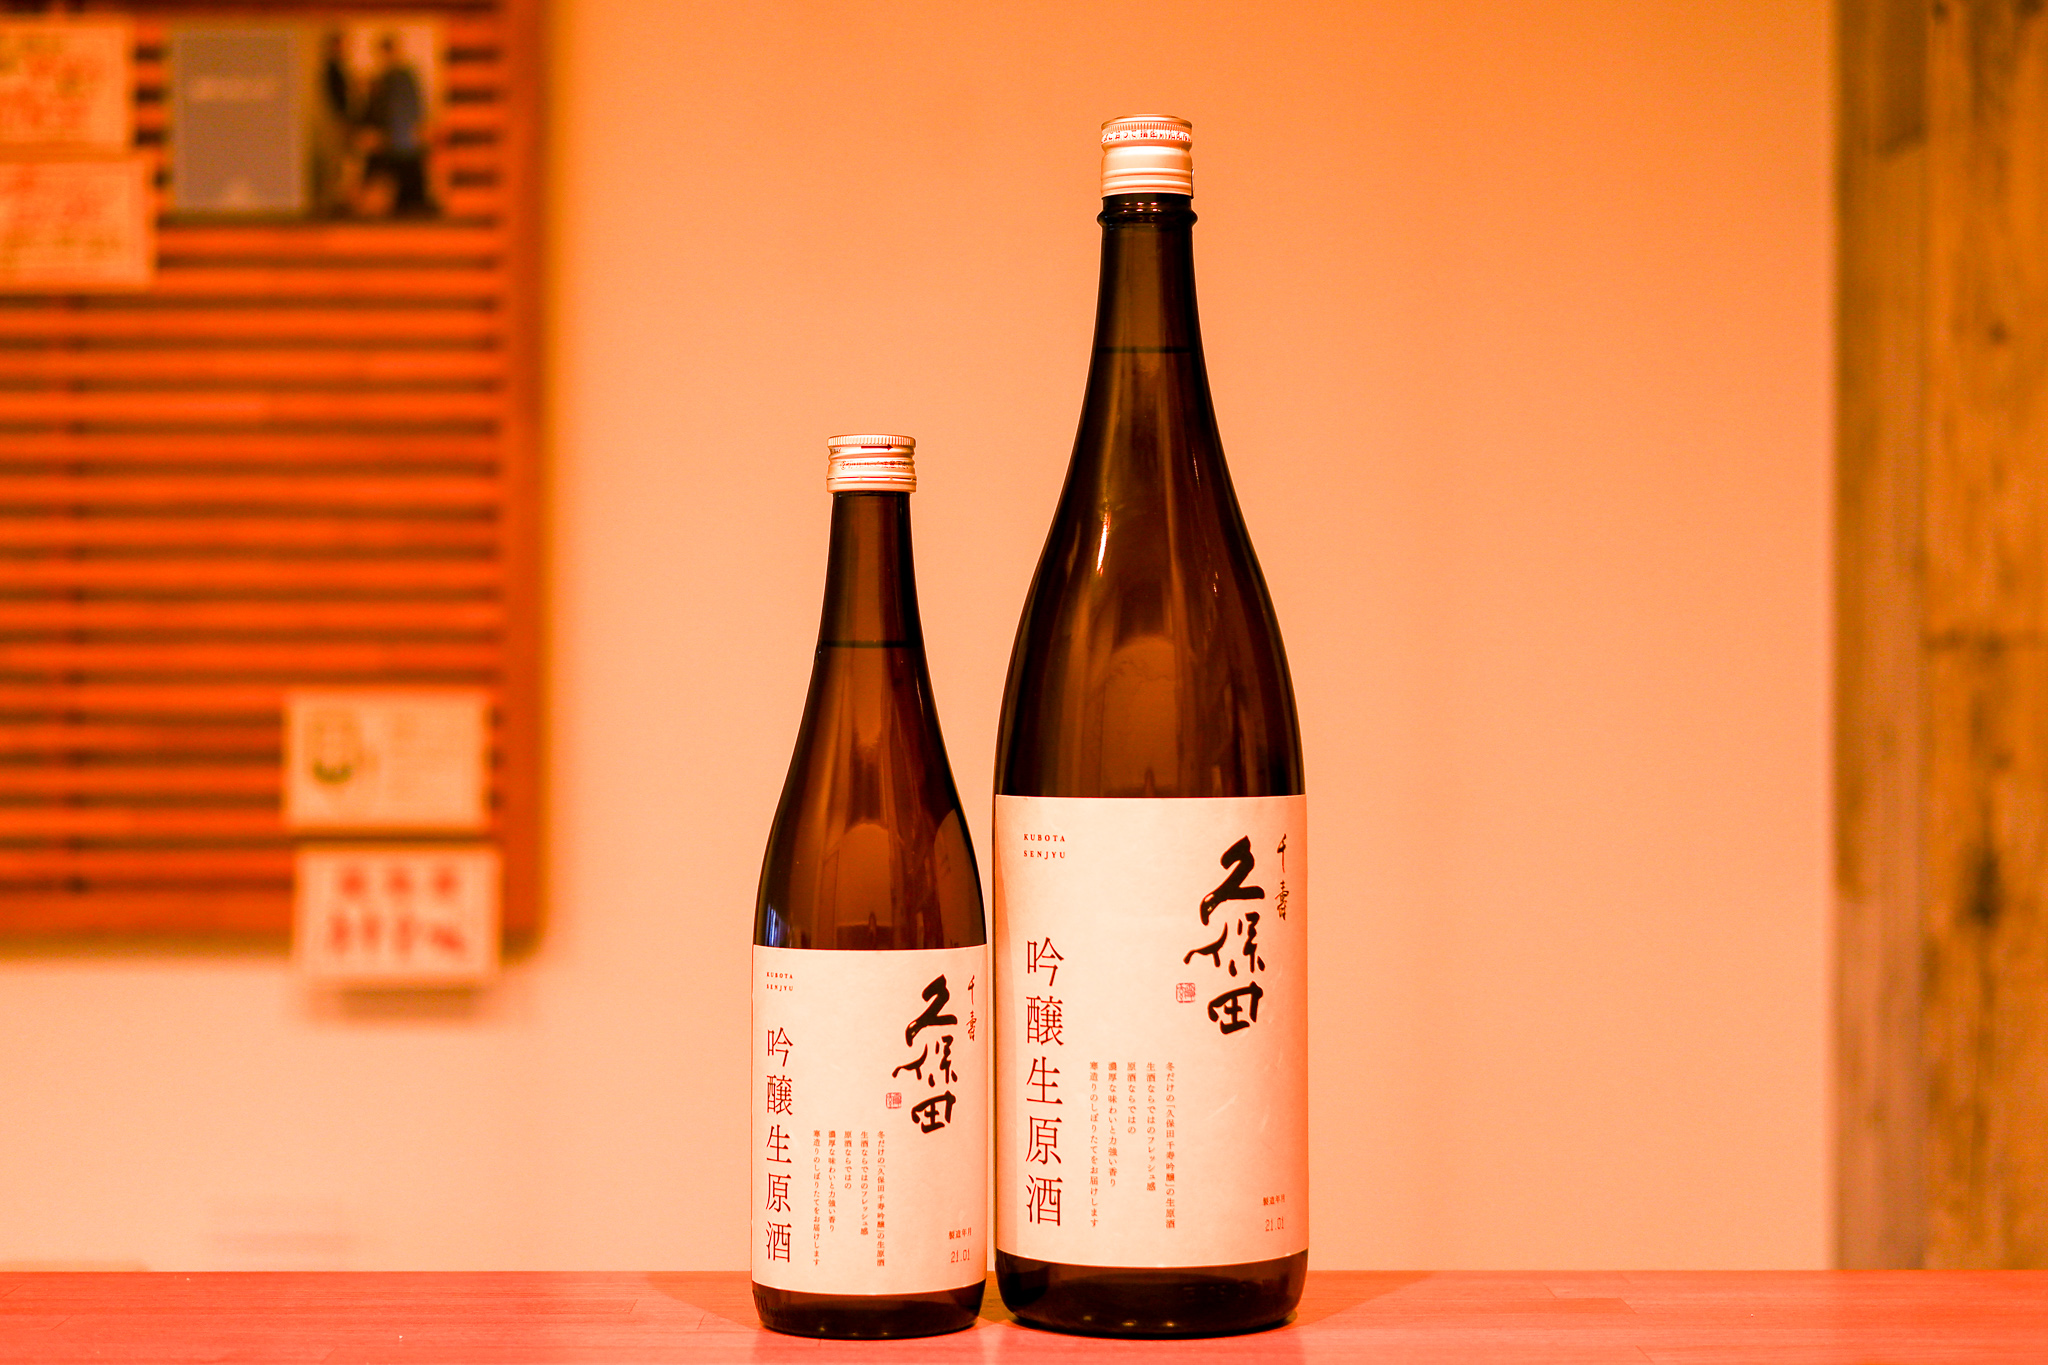 今年も無事に発売、年に1度の「久保田 千寿 吟醸 生原酒」 くわな屋 埼玉県北本市のワイン日本酒中心のお店